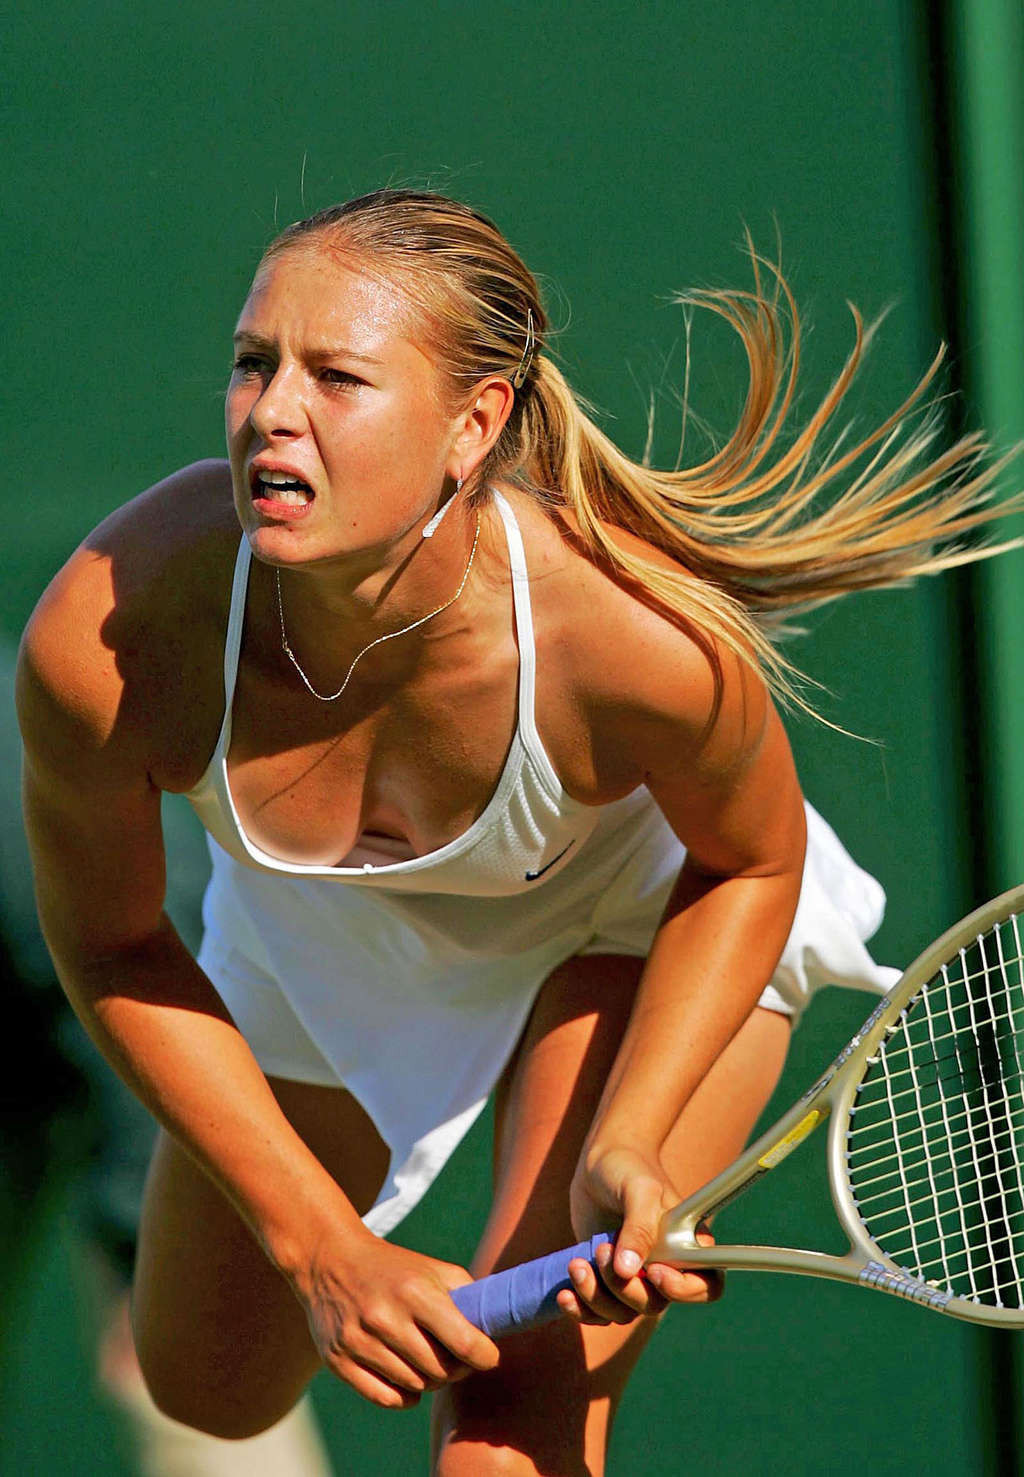 Maria sharapova nipple slip während spielen tennis paparazzi schießt
 #75346458